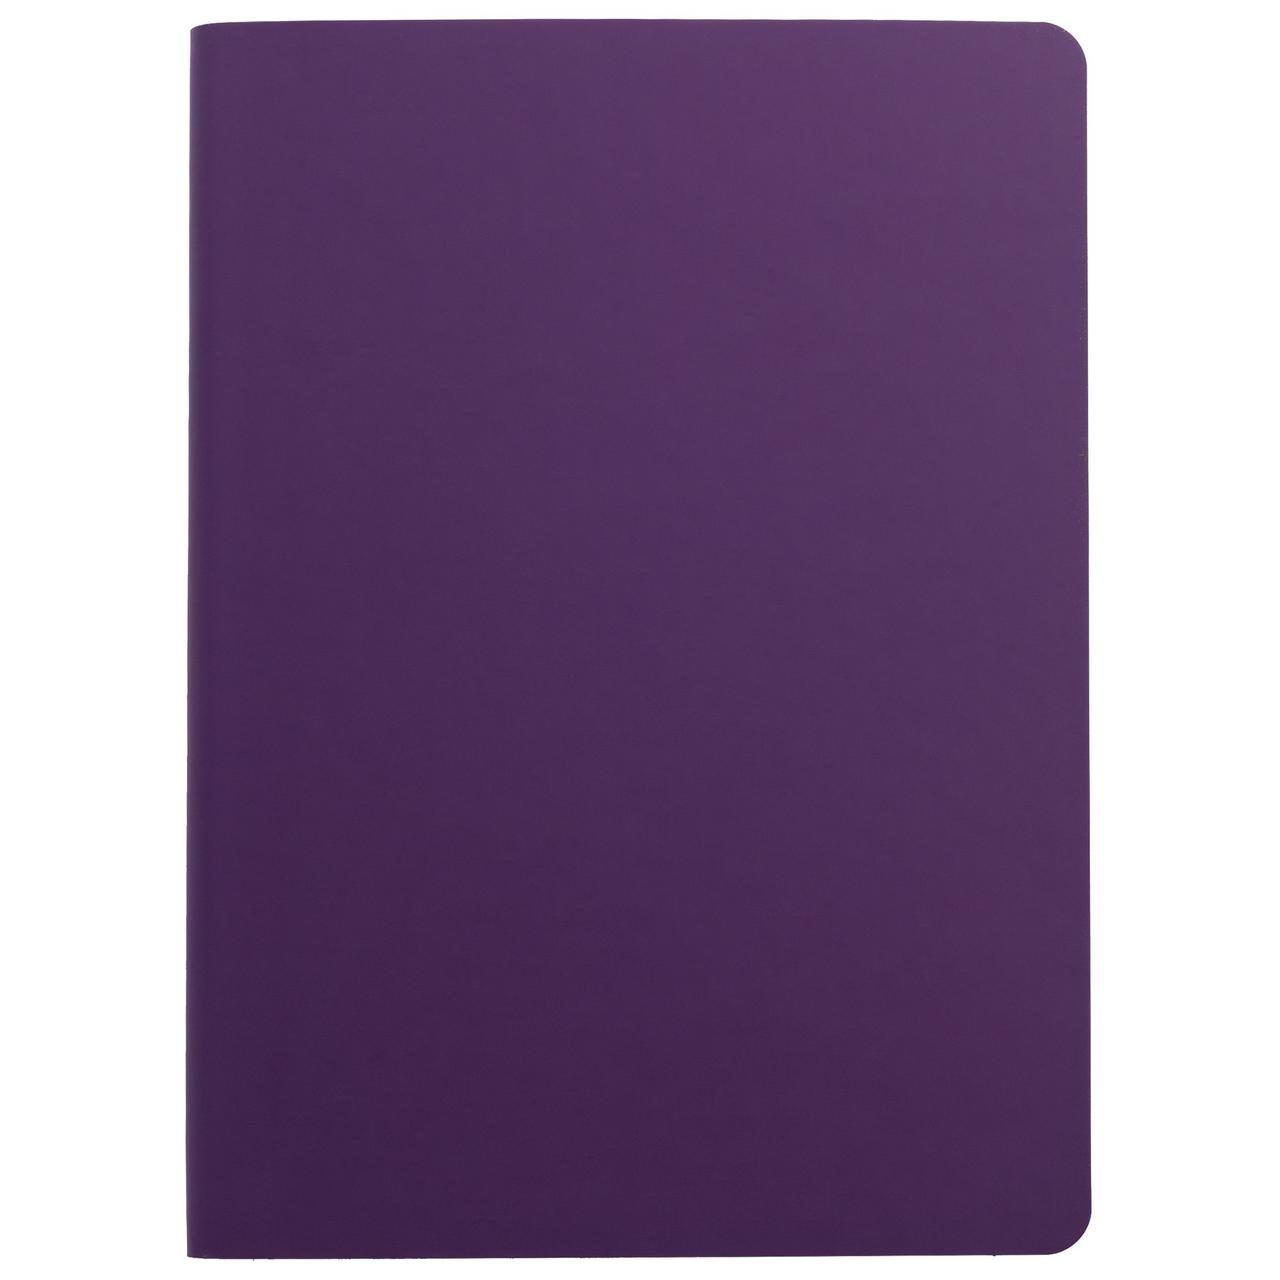 Ежедневник Flex Shall, недатированный, фиолетовый (артикул 7881.70)